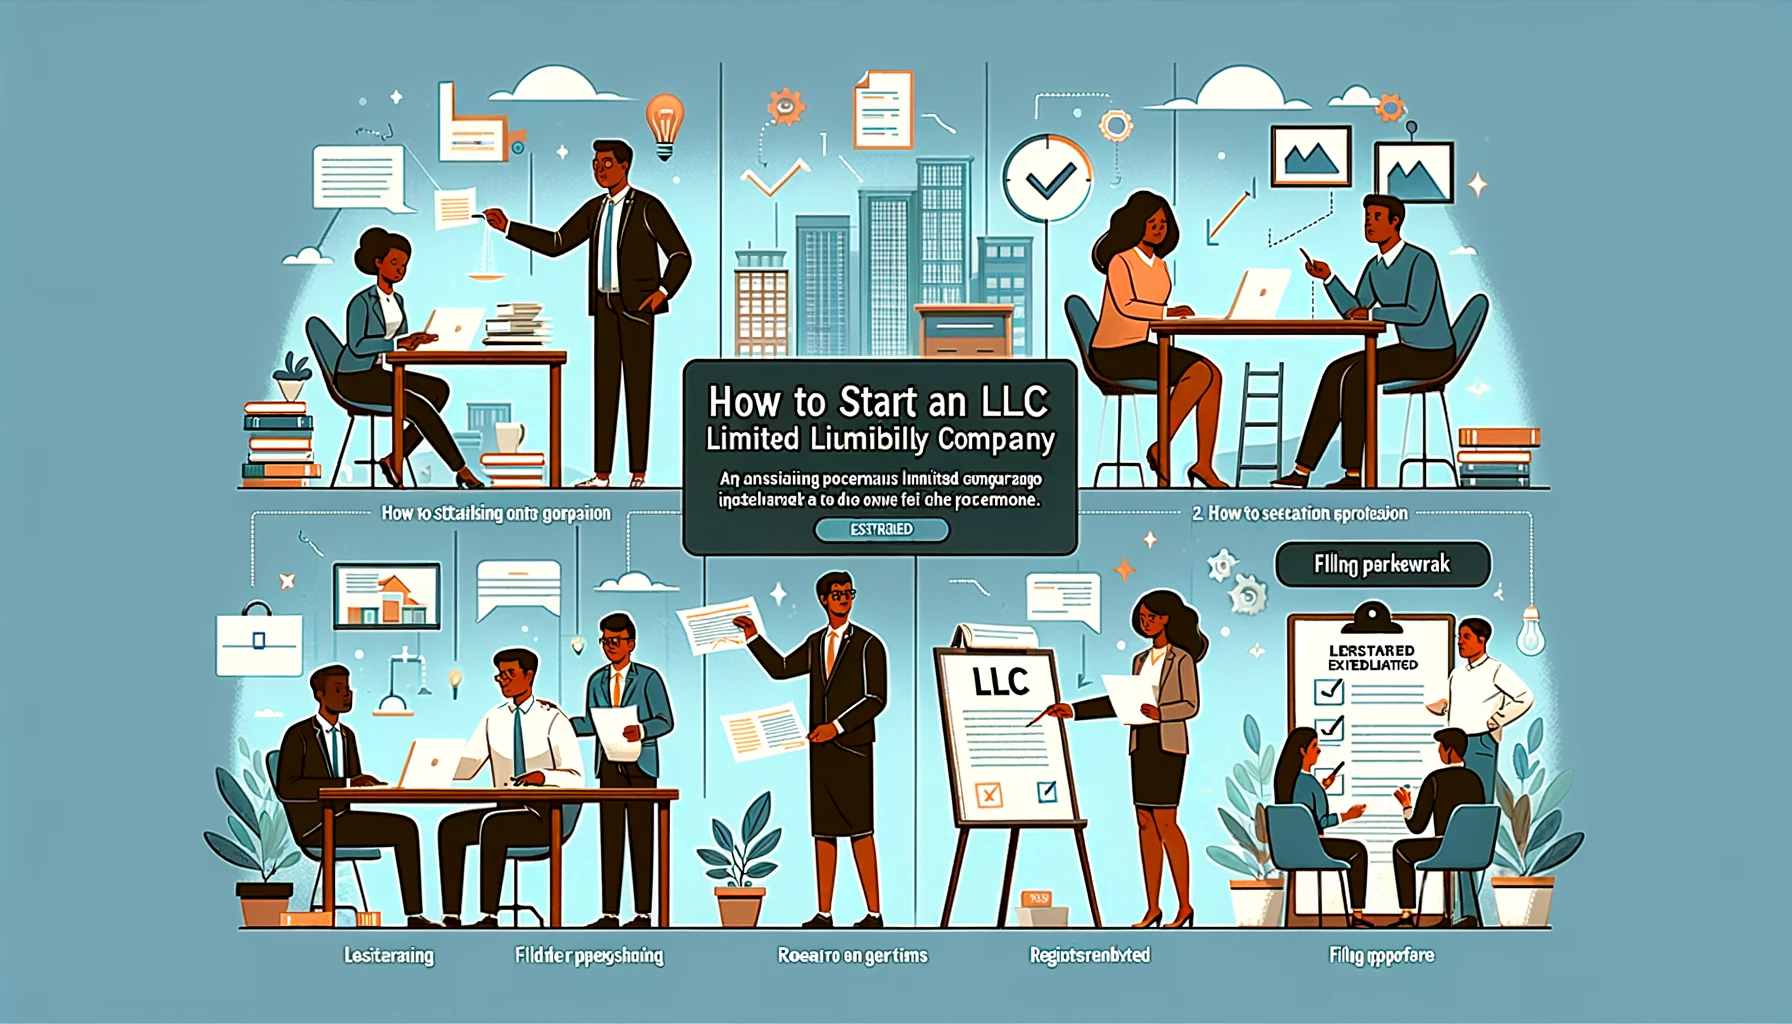 How to start an LLC